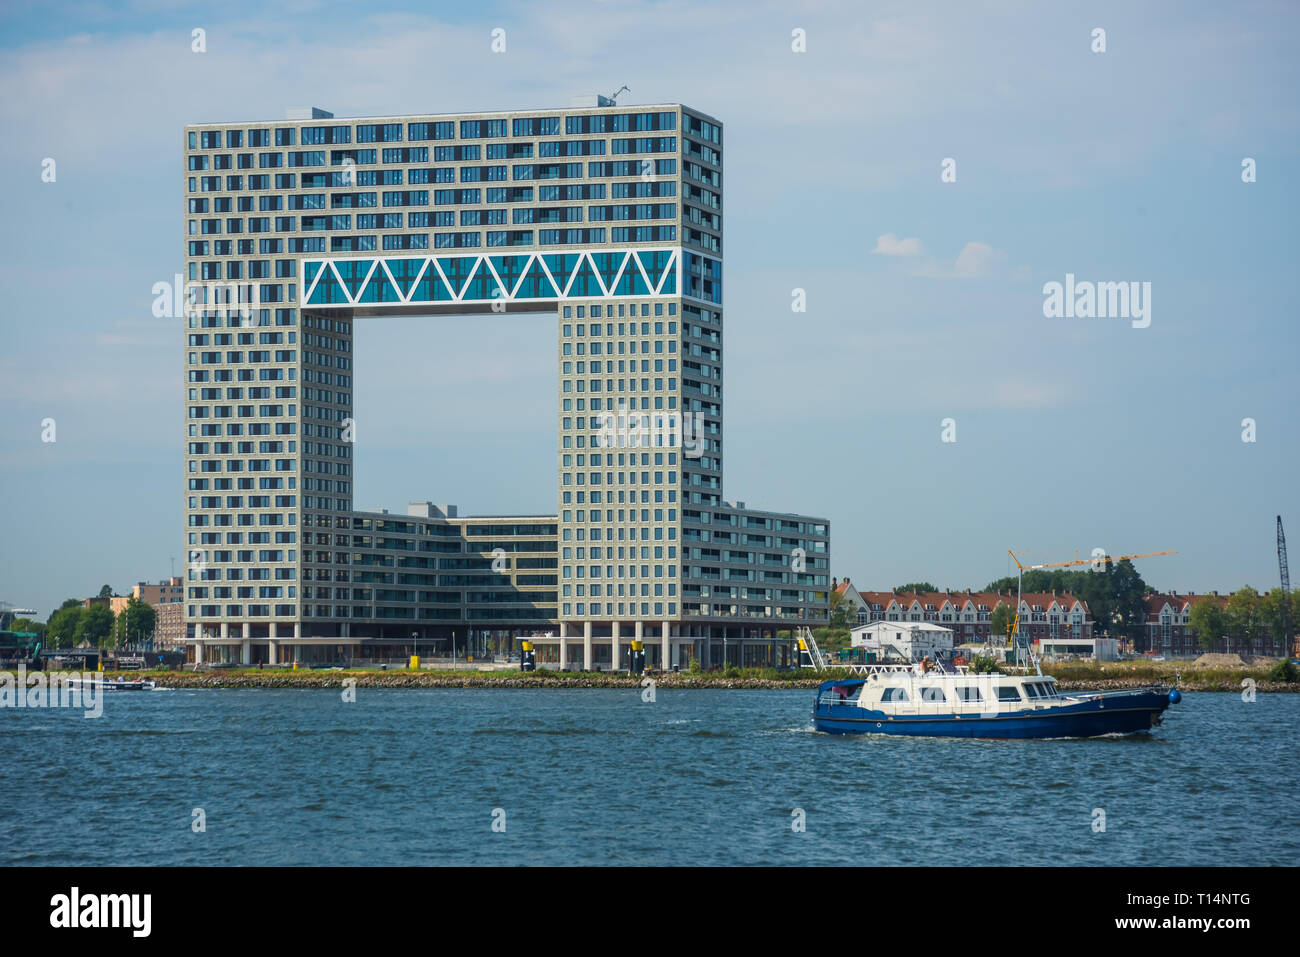 Der Pontsteiger ist ein aufsehenerregendes Gebäude in Houthaven, dem aufstrebenden Amsterdamer Stadtteil am Wasser. Architekten: Van Rossum Raadgevend Foto Stock